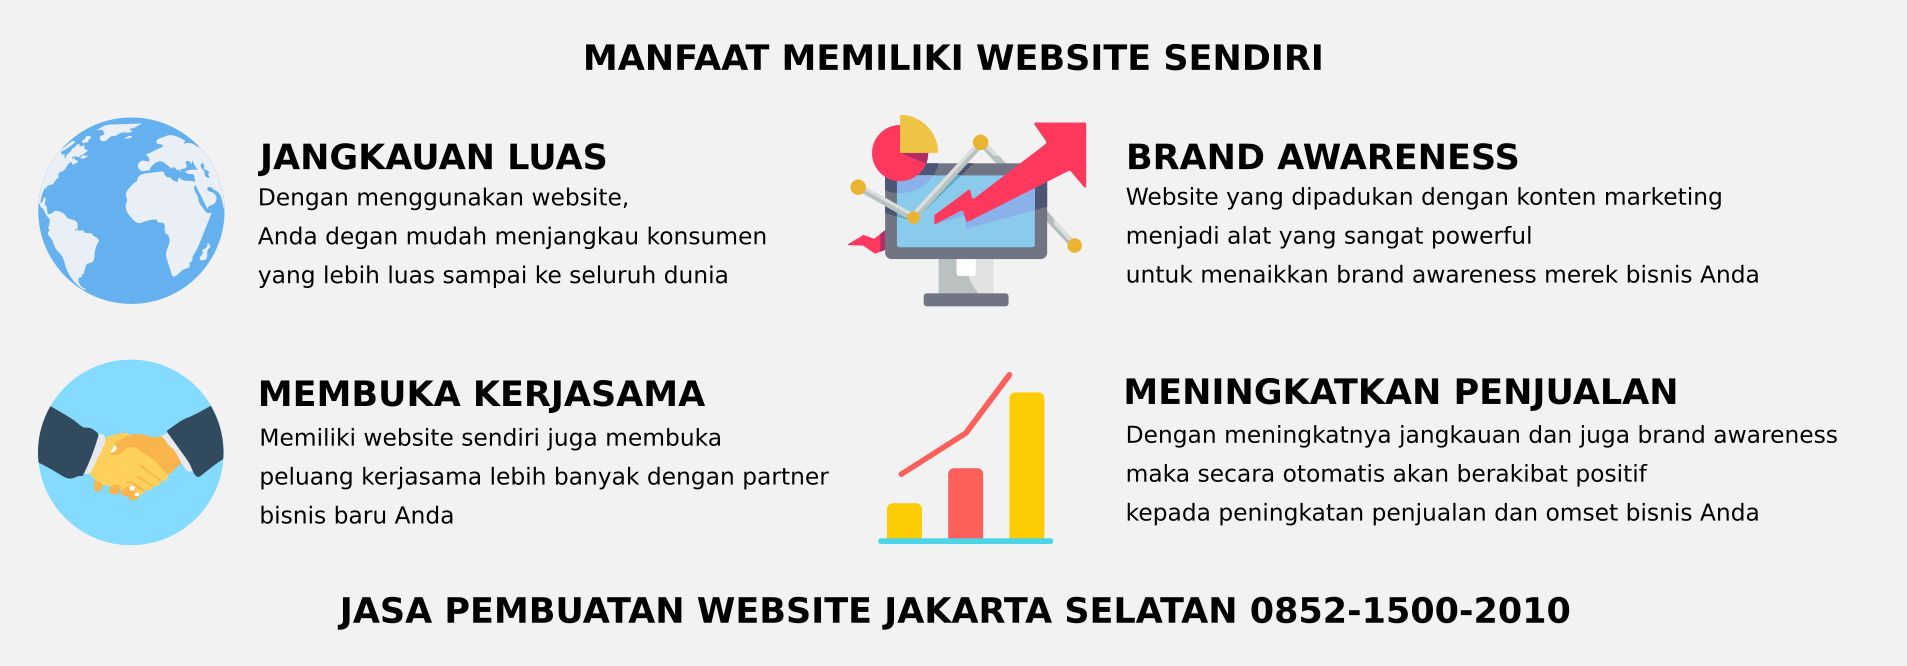 Manfaat memiliki website sendiri di Jakarta Selatan